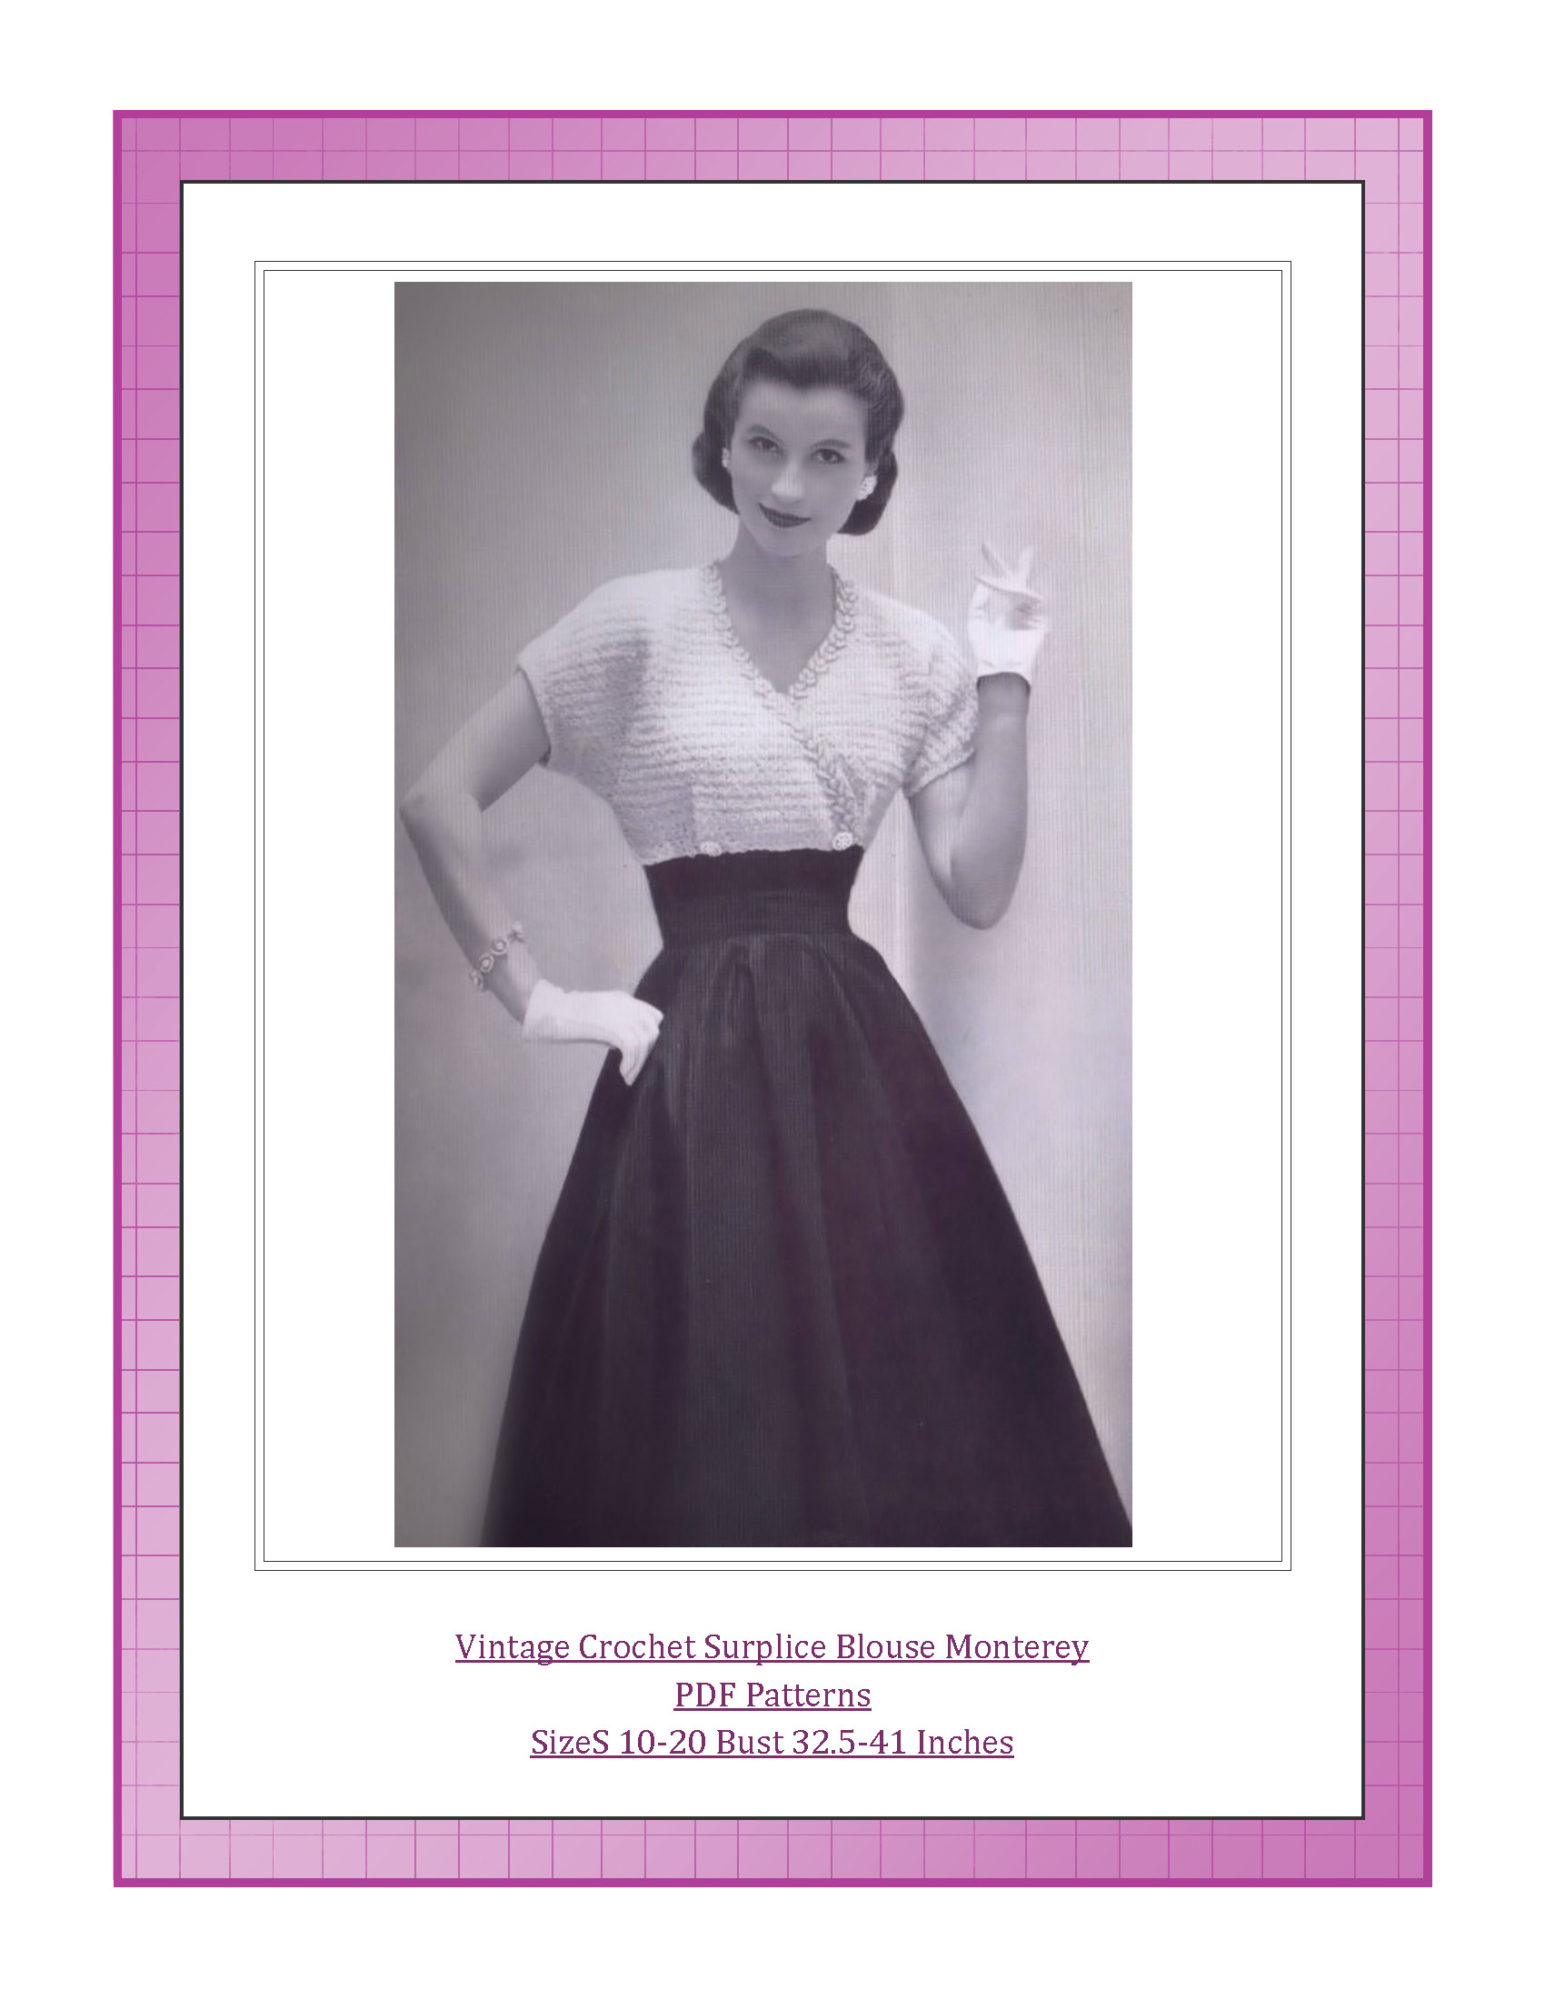 Vintage Crochet Surplice Blouse Monterey PDF Patterns Sizes 10-20 Bust 32.5-41 Inches